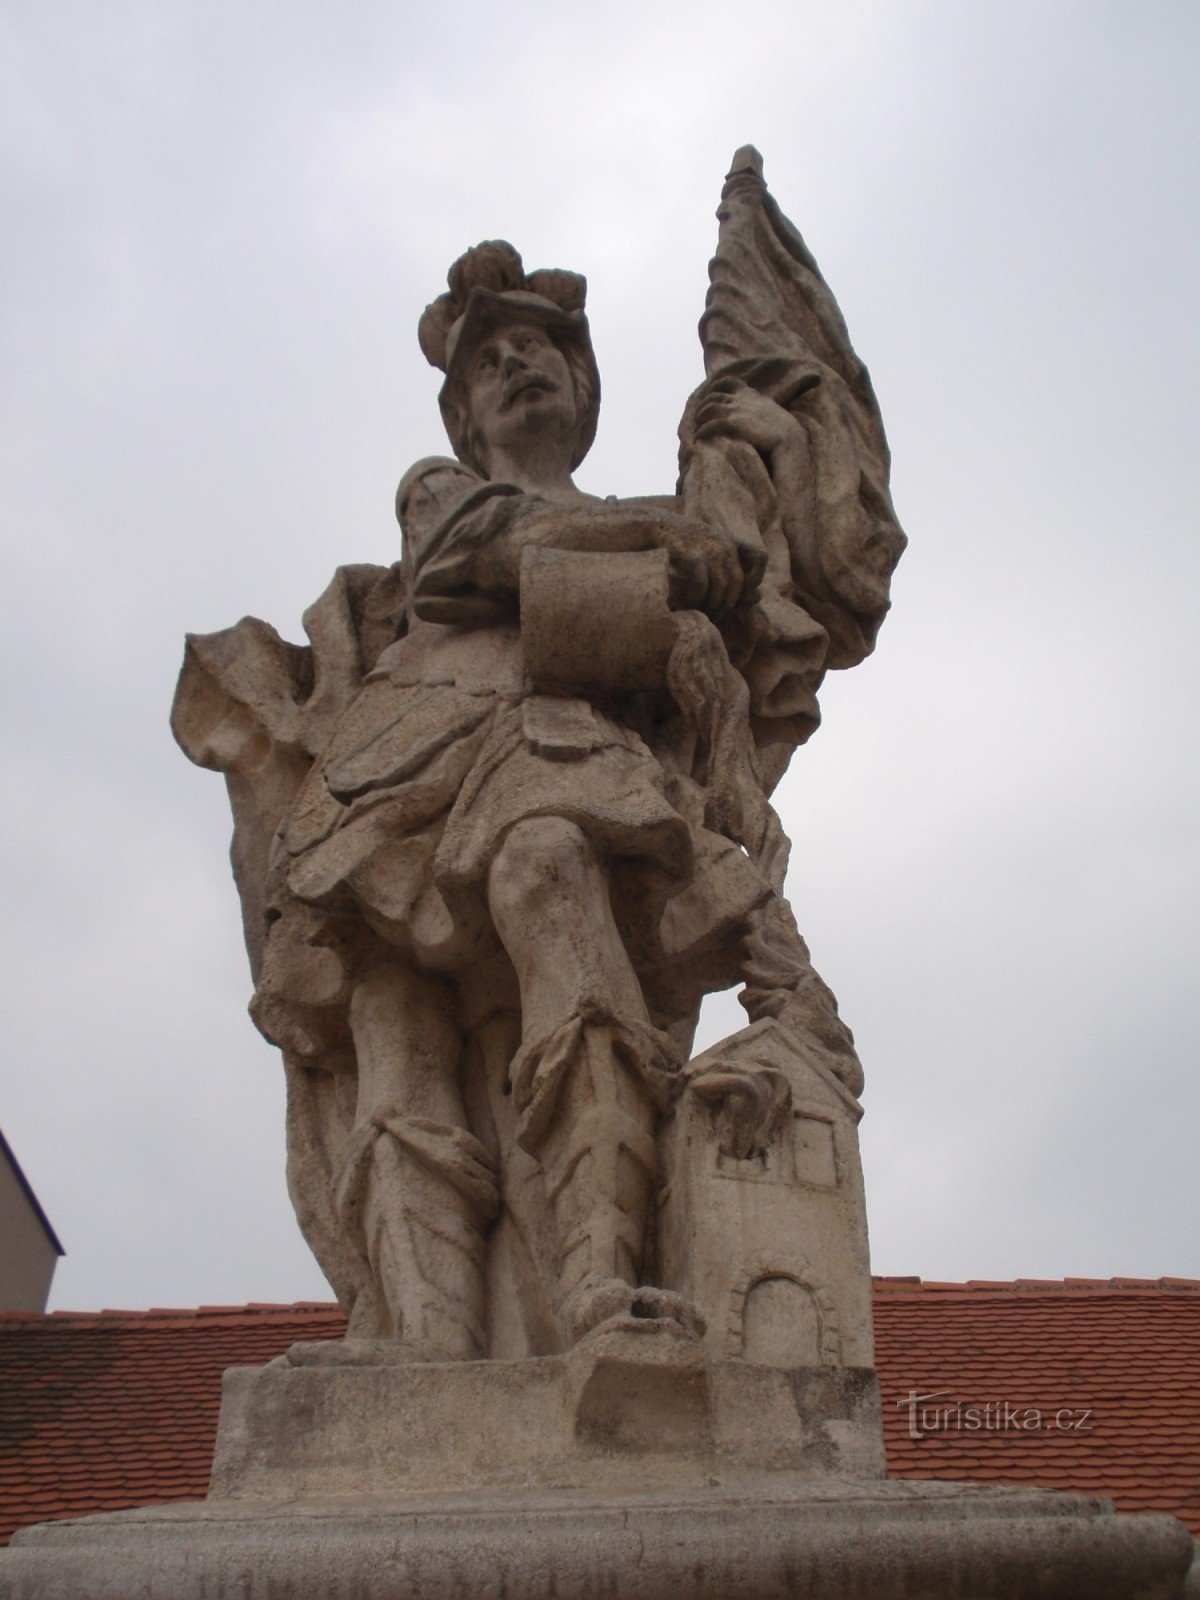 Sculpturi baroc la Miroslav